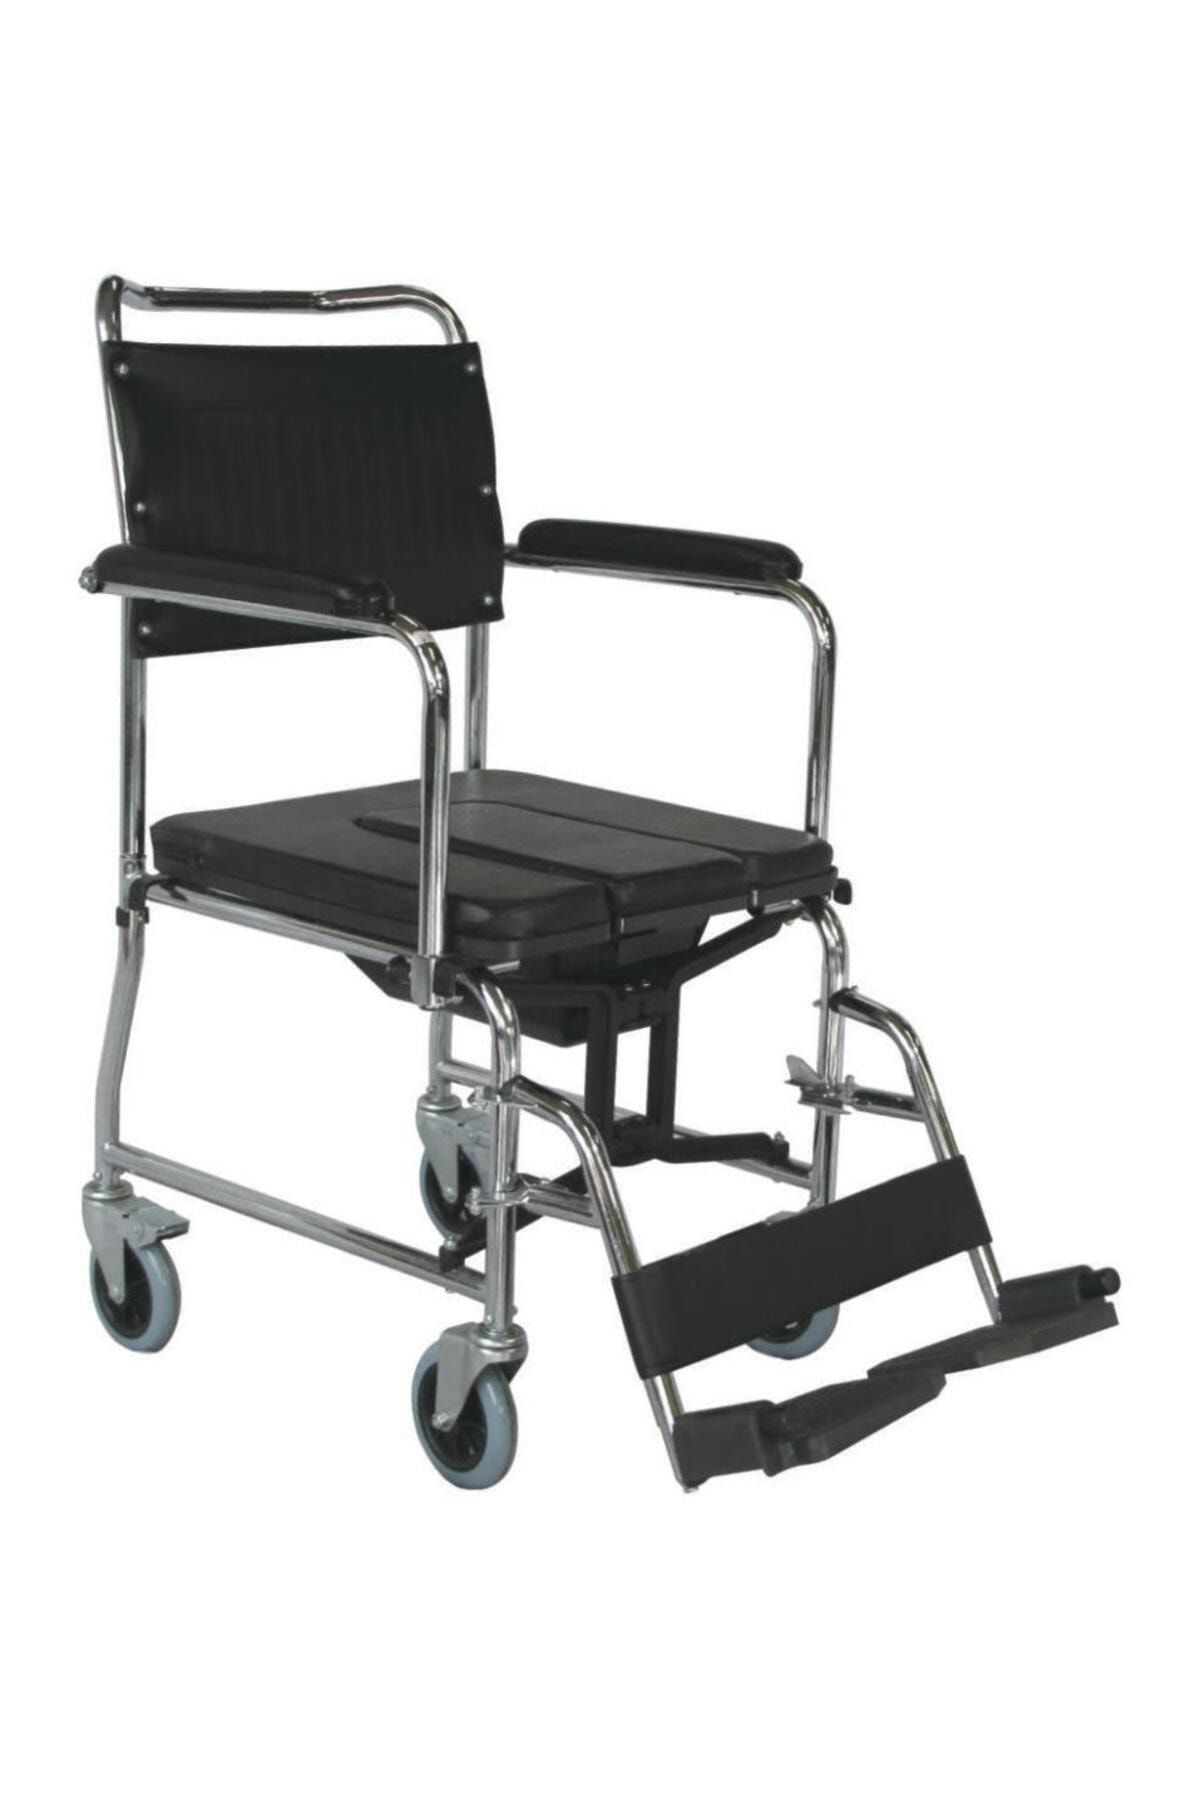 Medikalbirlik Comfort Plus KY689U Tuvaletli Tekerlekli Sandalye